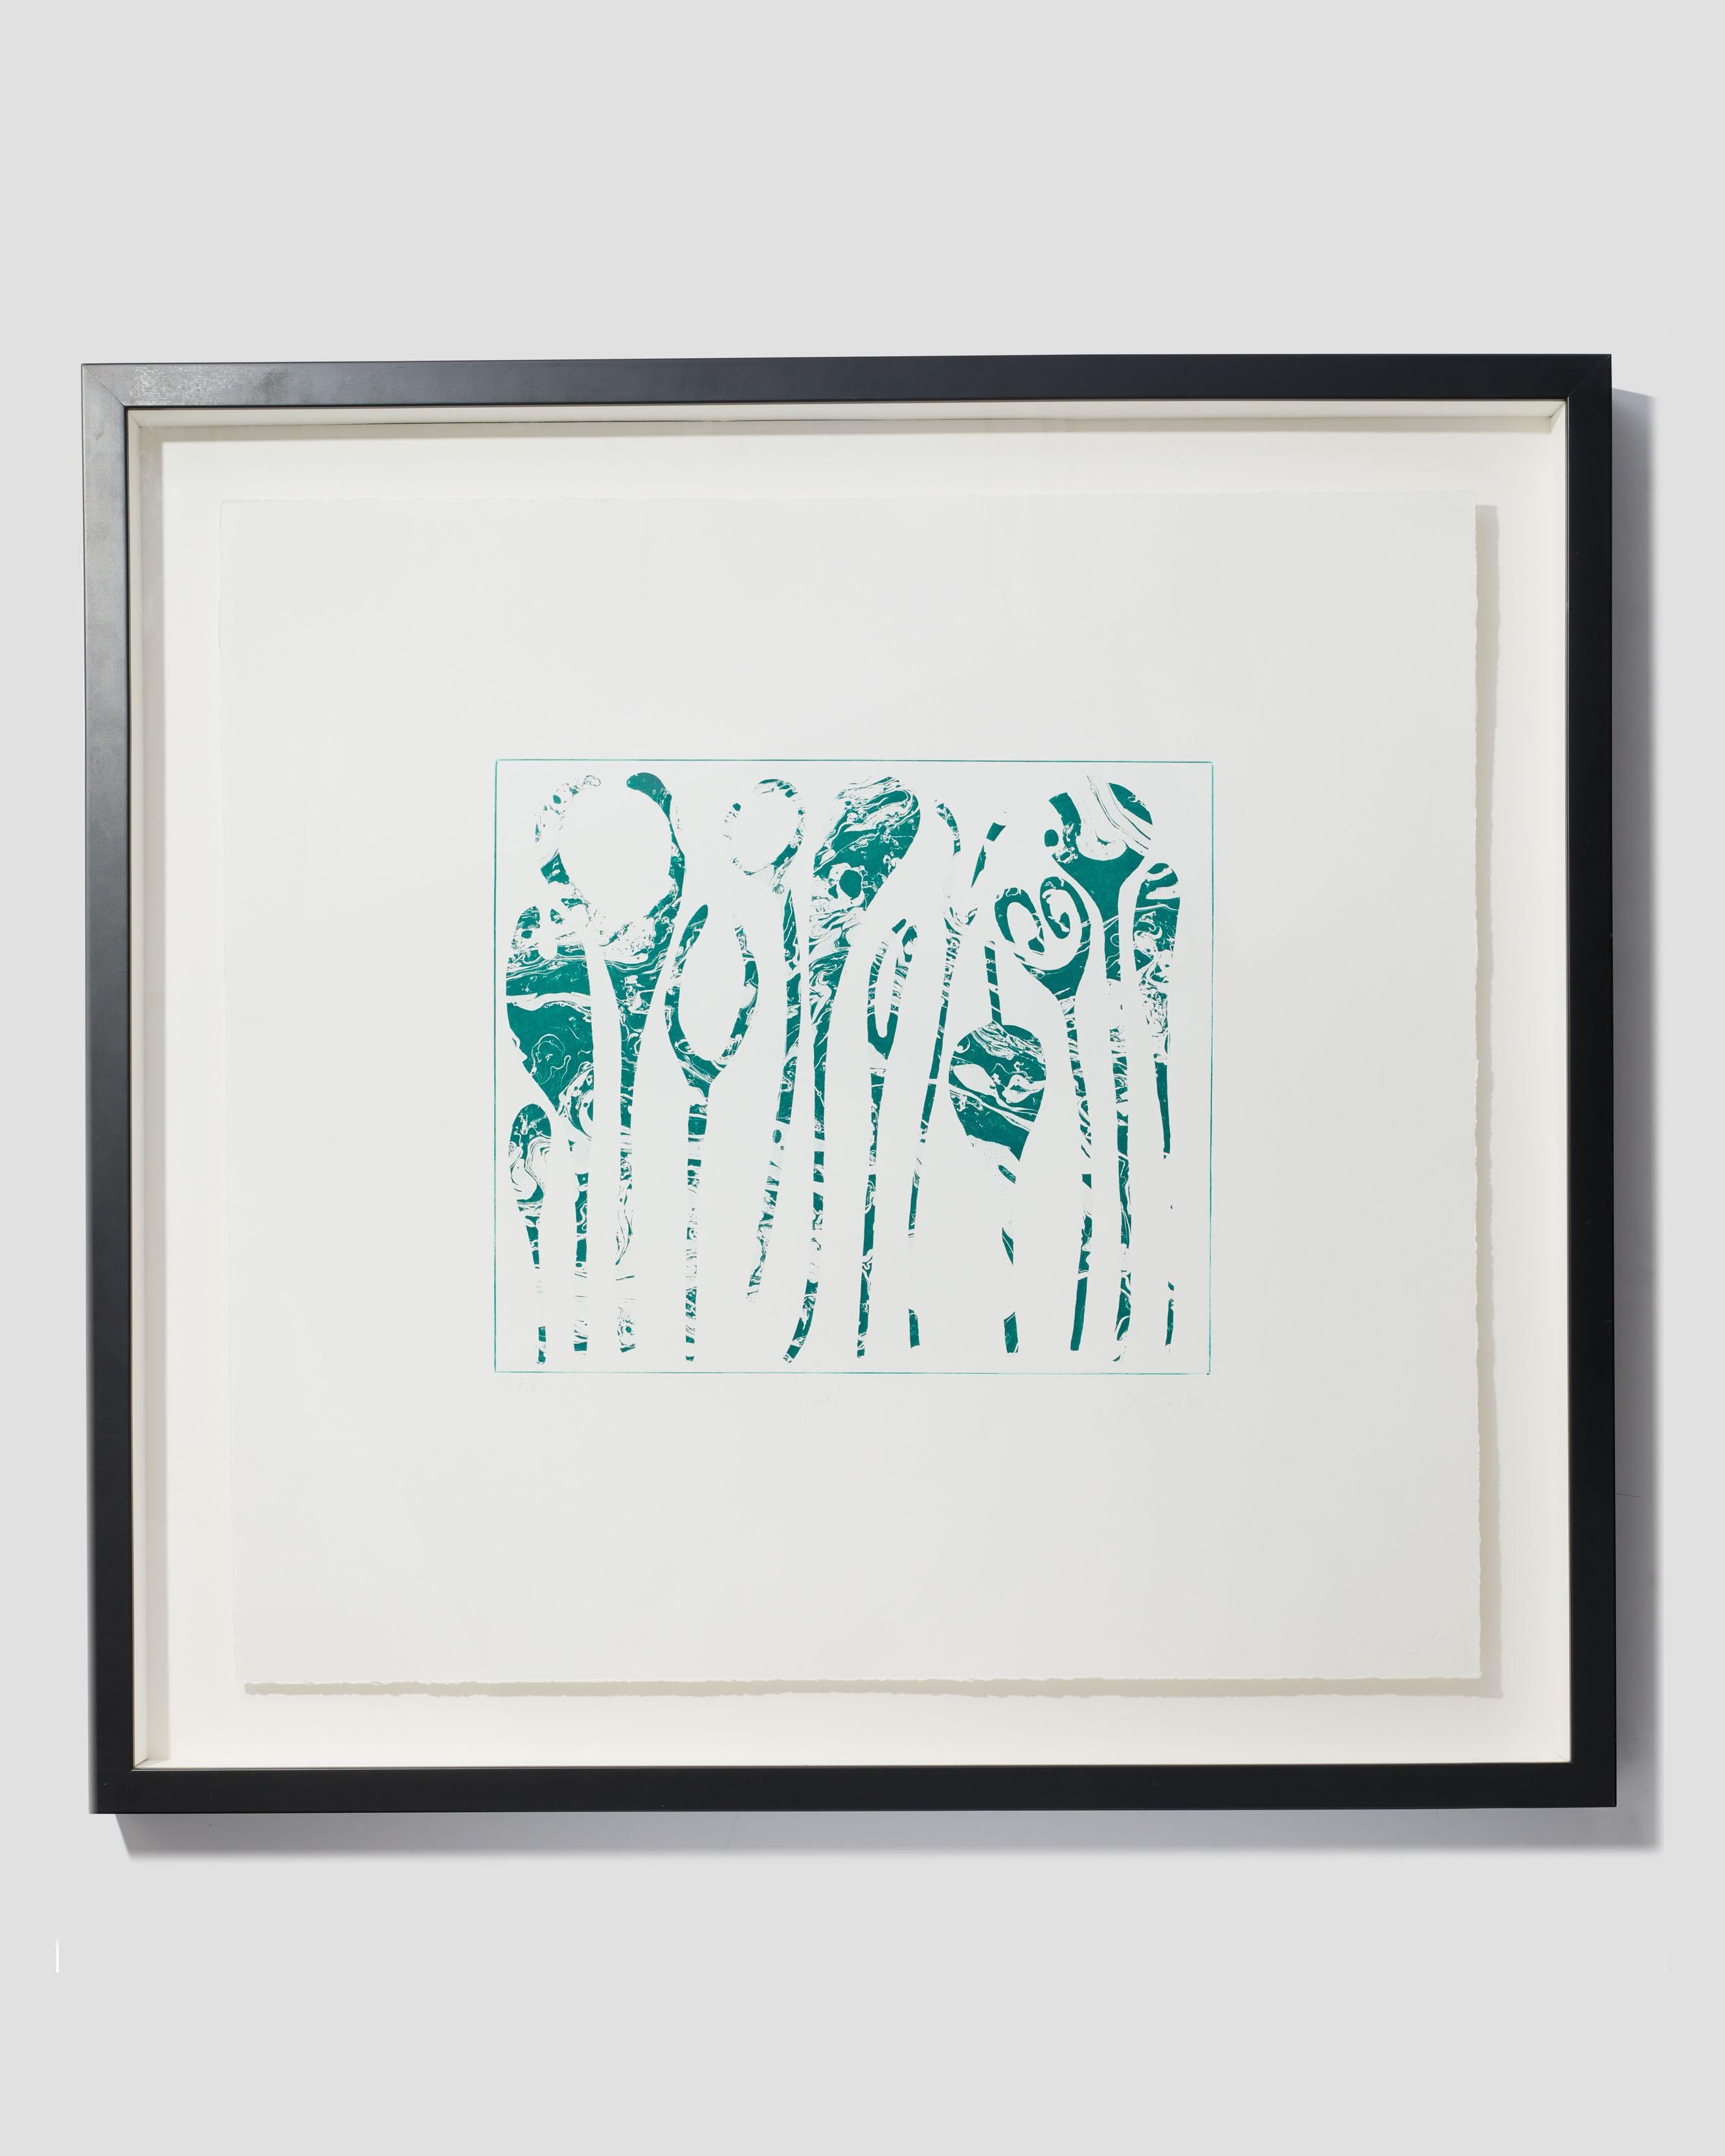 Tony Cragg Abstract Print - Spores